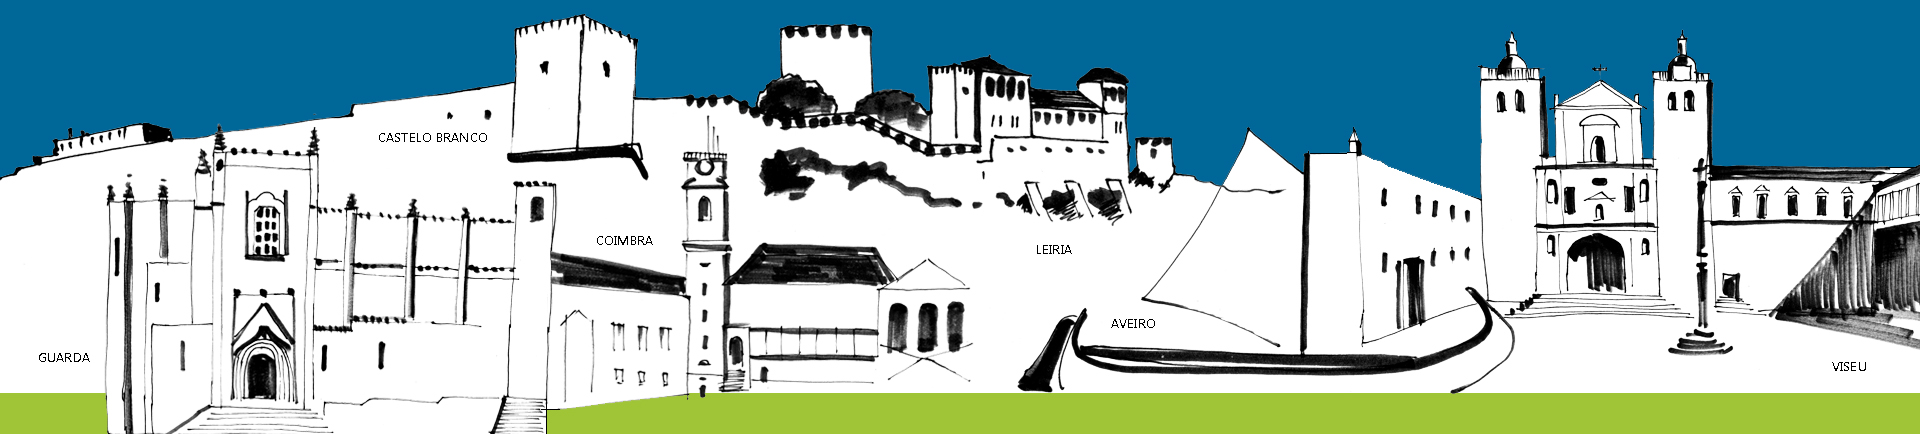 ilustração de construções históricas das cidades da Direção Regional do Centro: Guarda, Castelo Branco, Coimbra, Leiria, Aveiro, Viseu